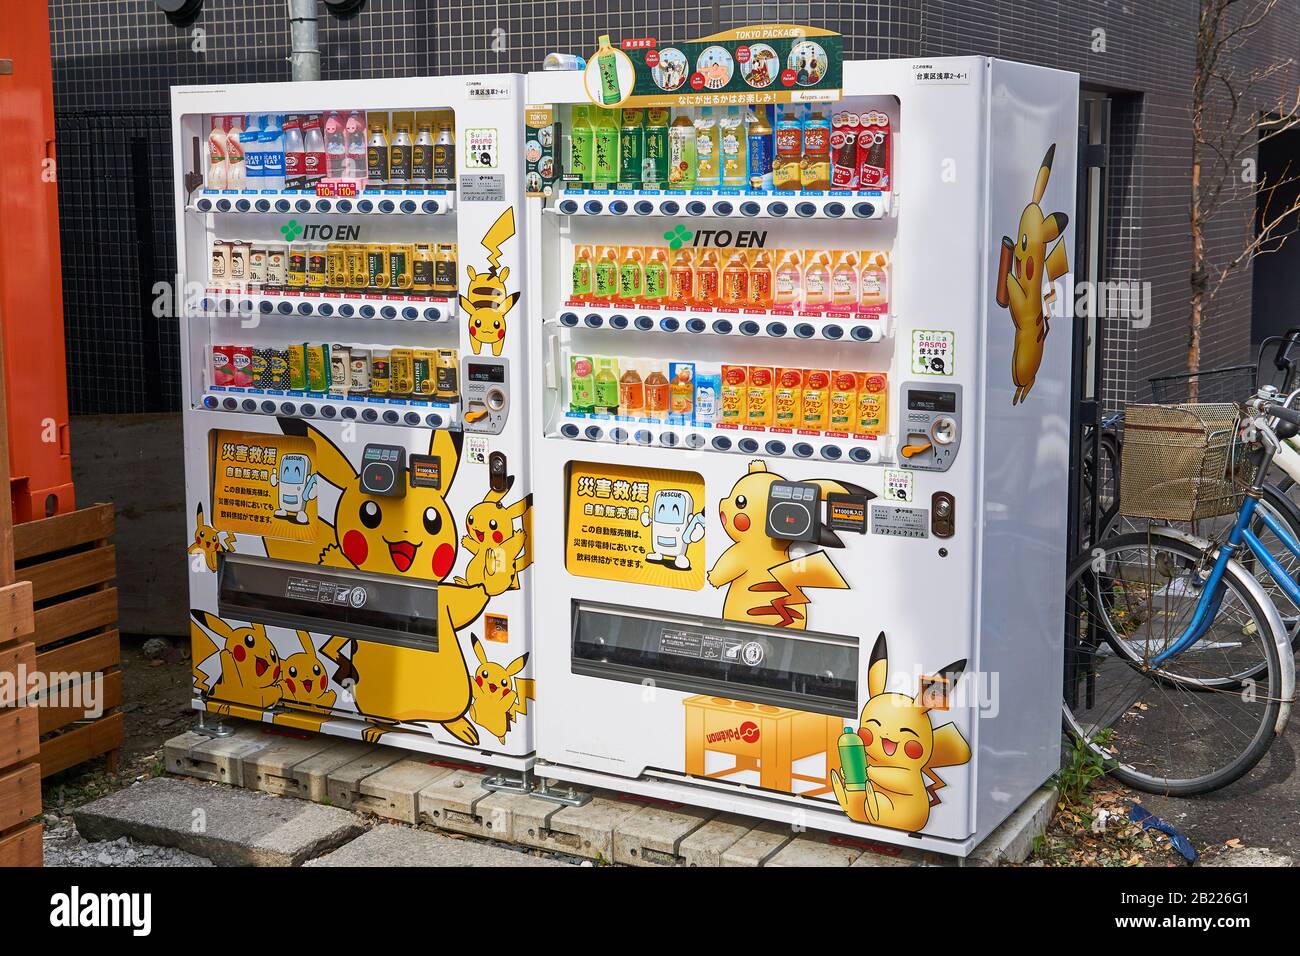 Zwei japanische Automaten von Itoen-Getränken, die mit dem Pokemon-Charakter Pikachu in Asakusa, Tokio, Japan bedeckt sind. Stockfoto